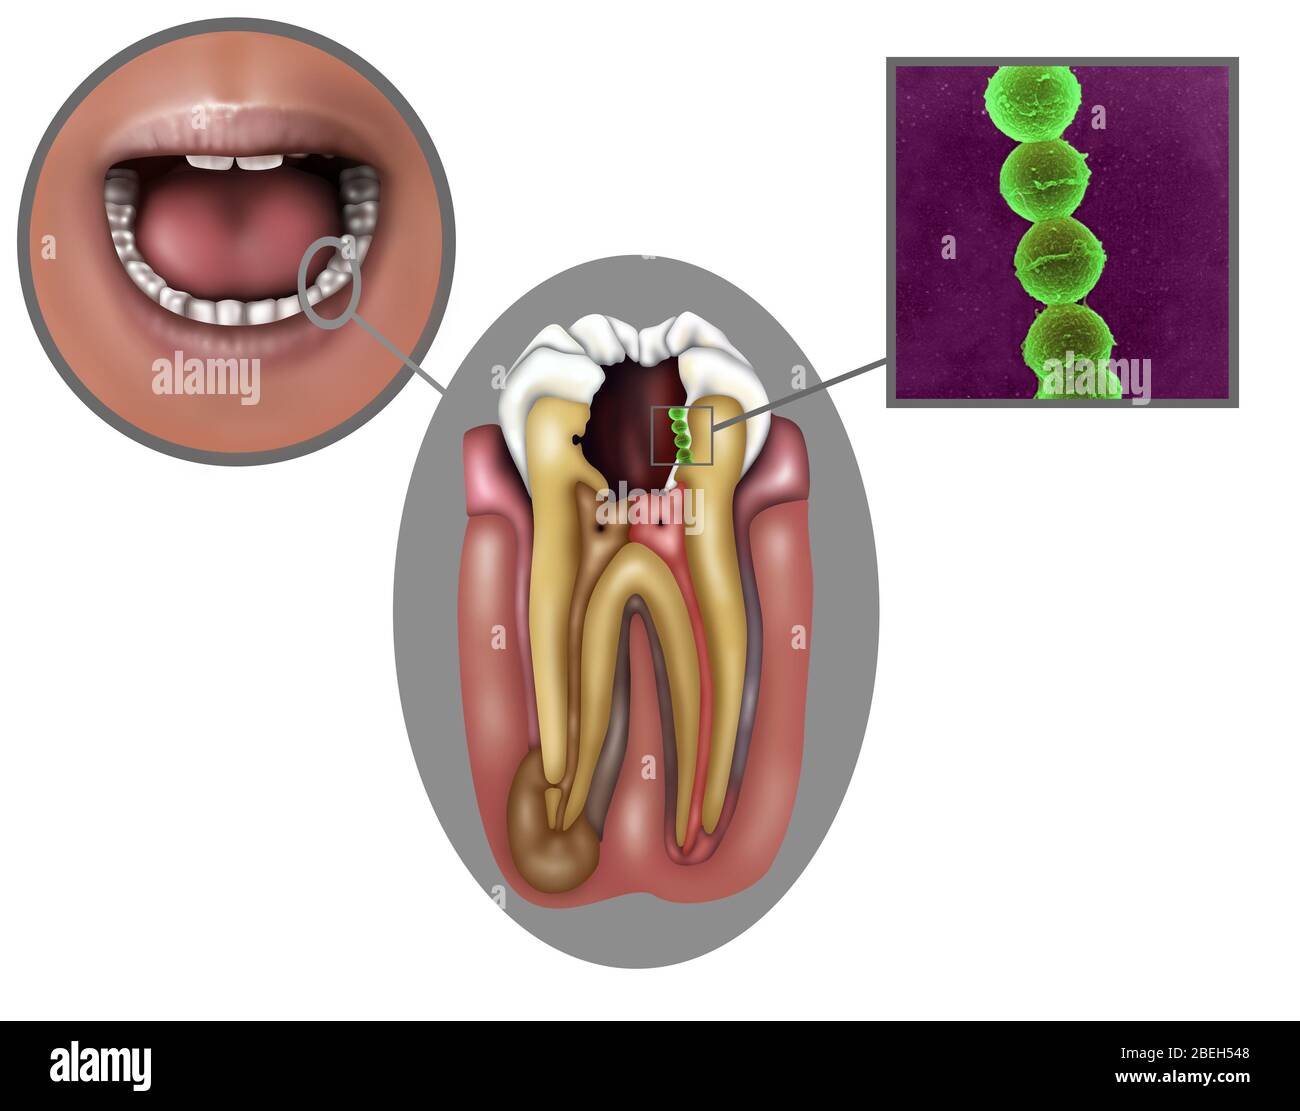 types of oral diseases